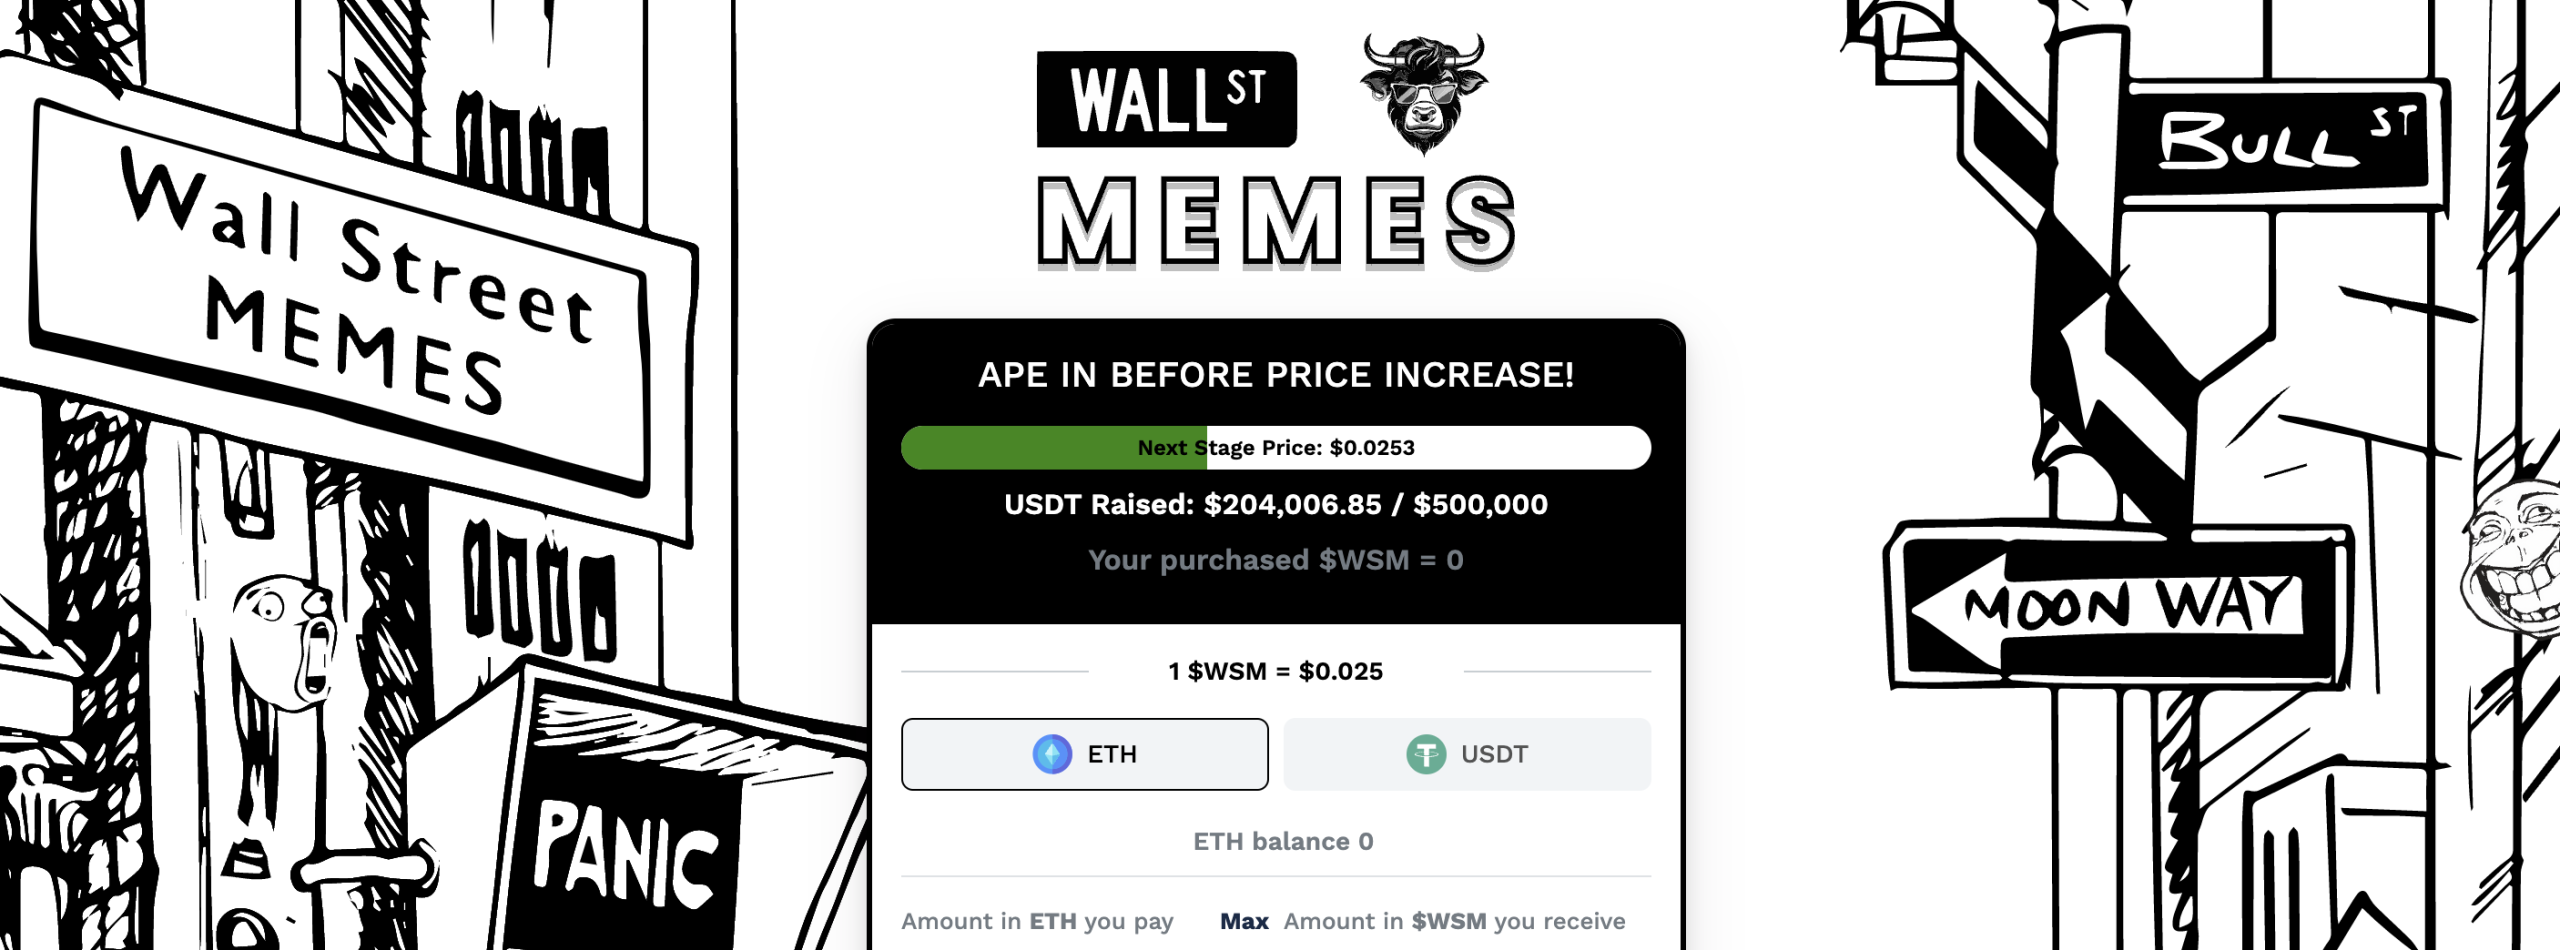 Wall Street Memes kainos istorija